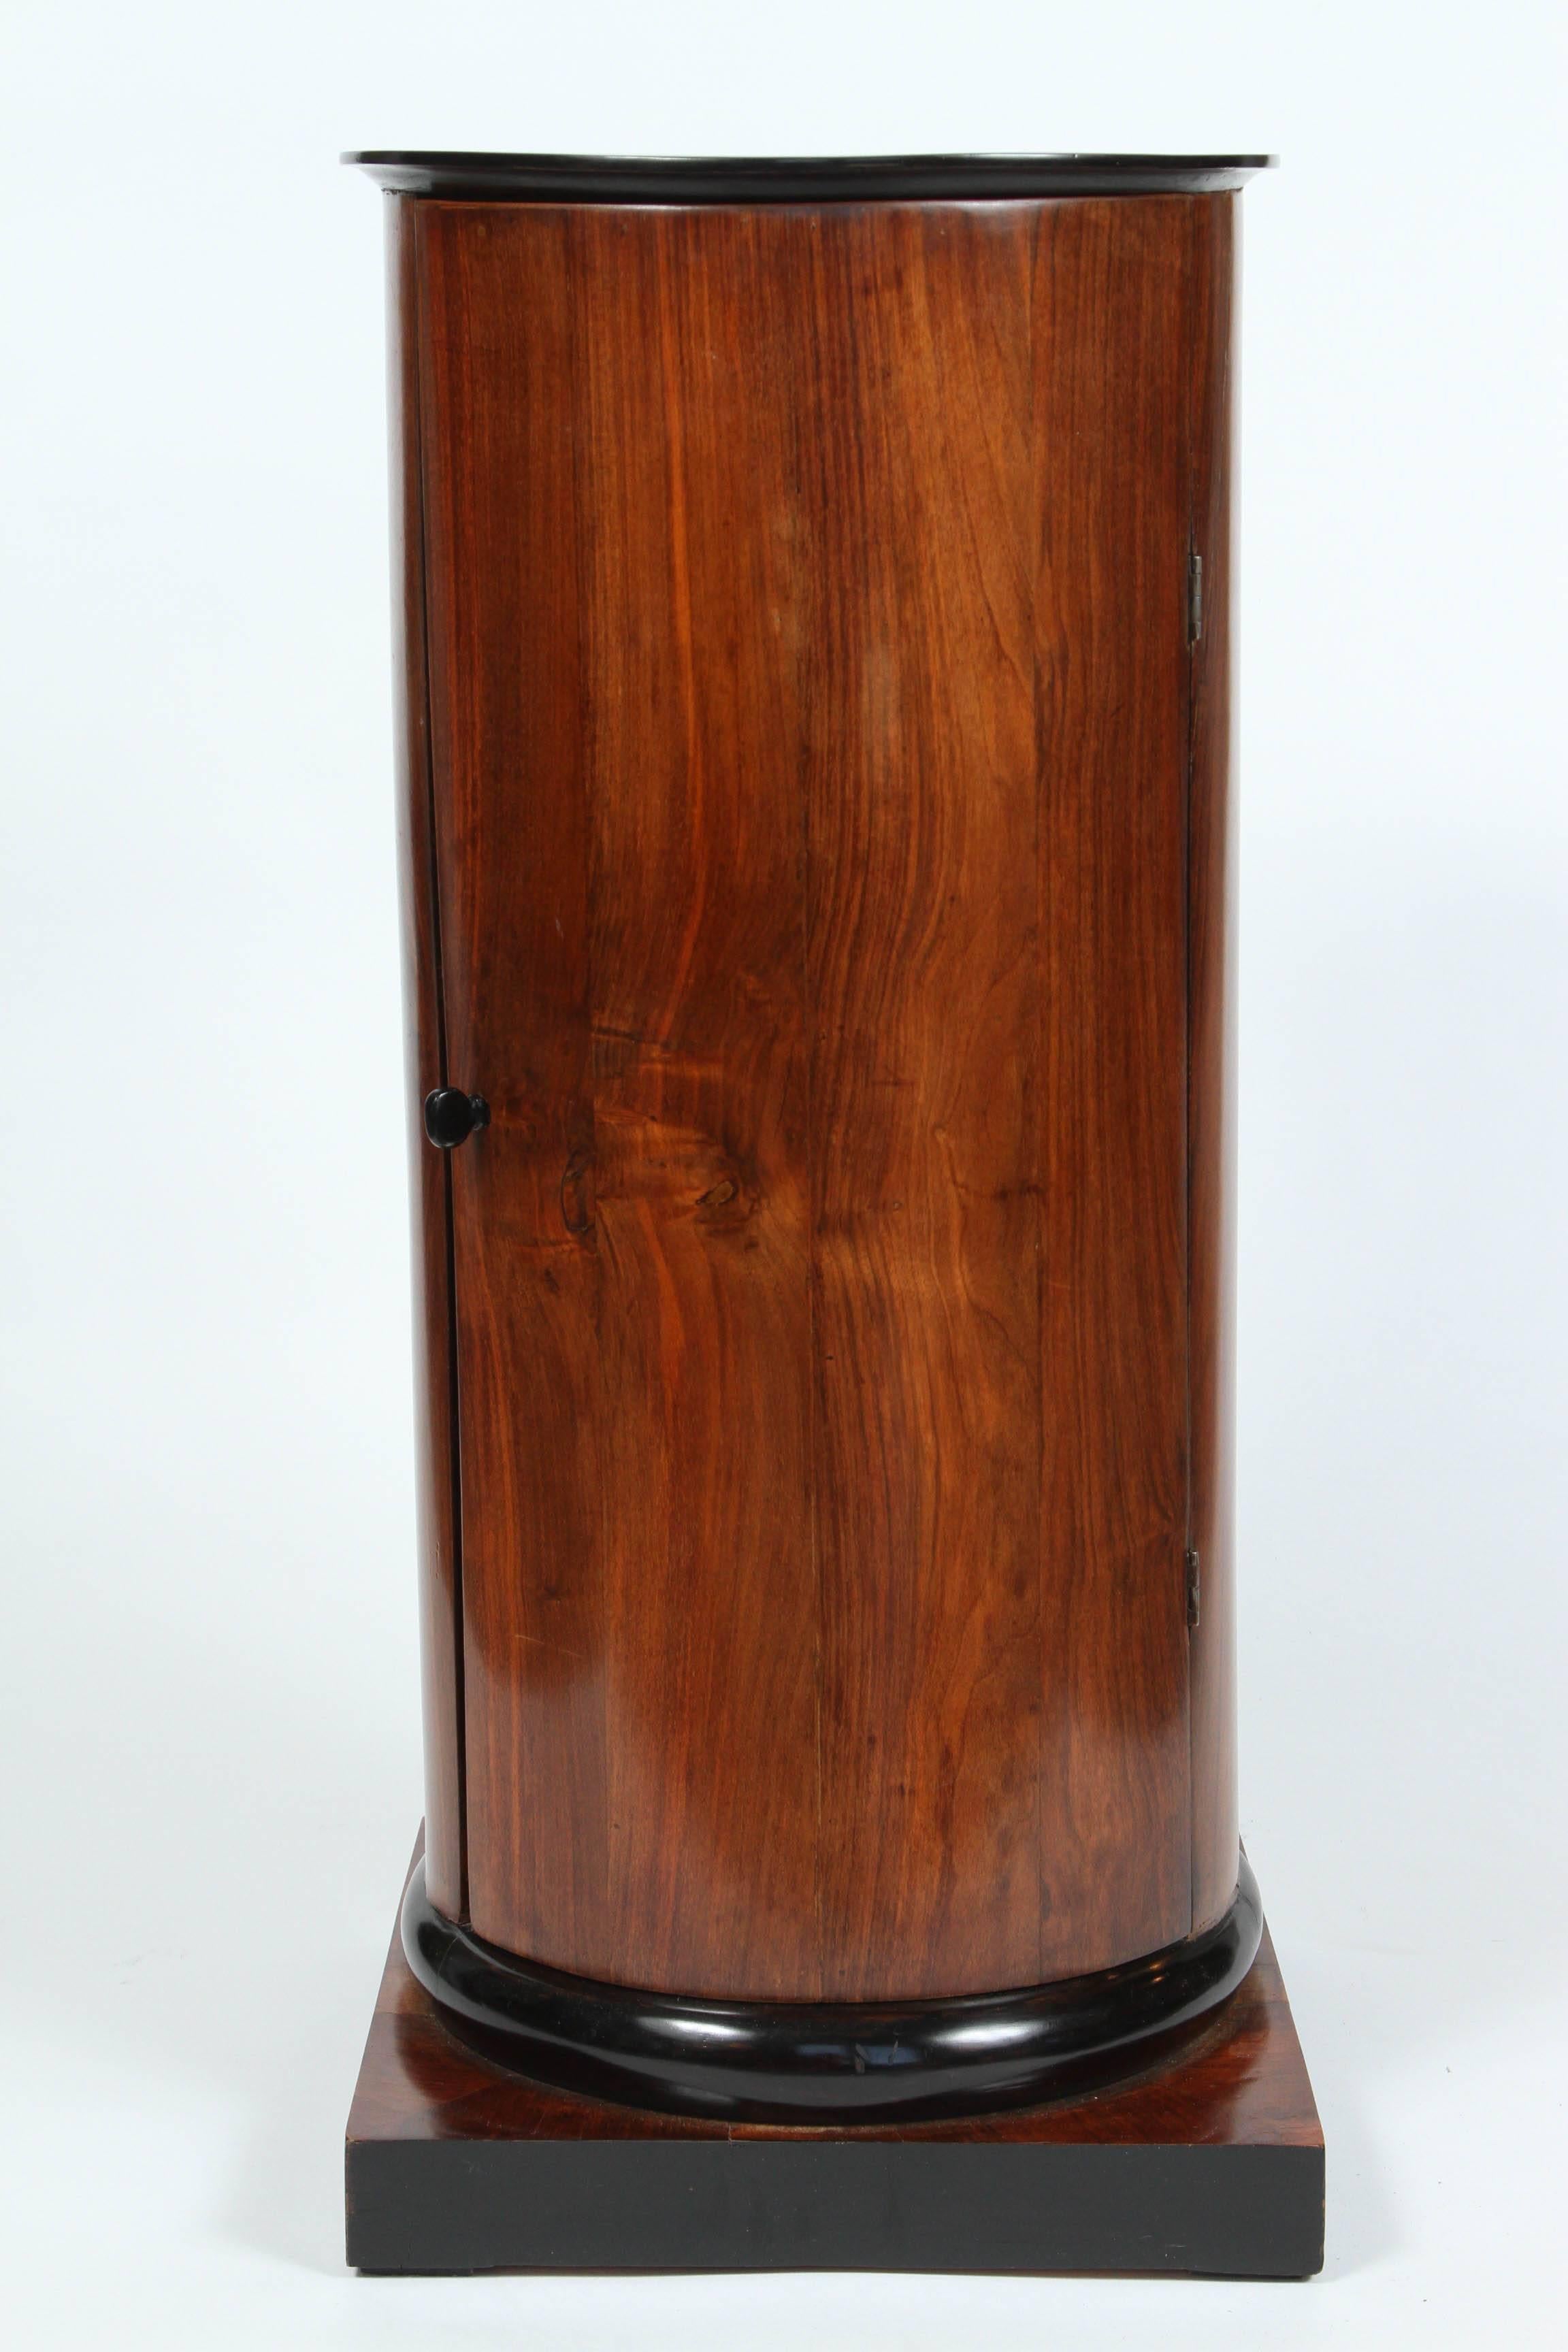 A walnut and ebonized wood biedermeier cylindrical pedestal cupboard, 19th century.